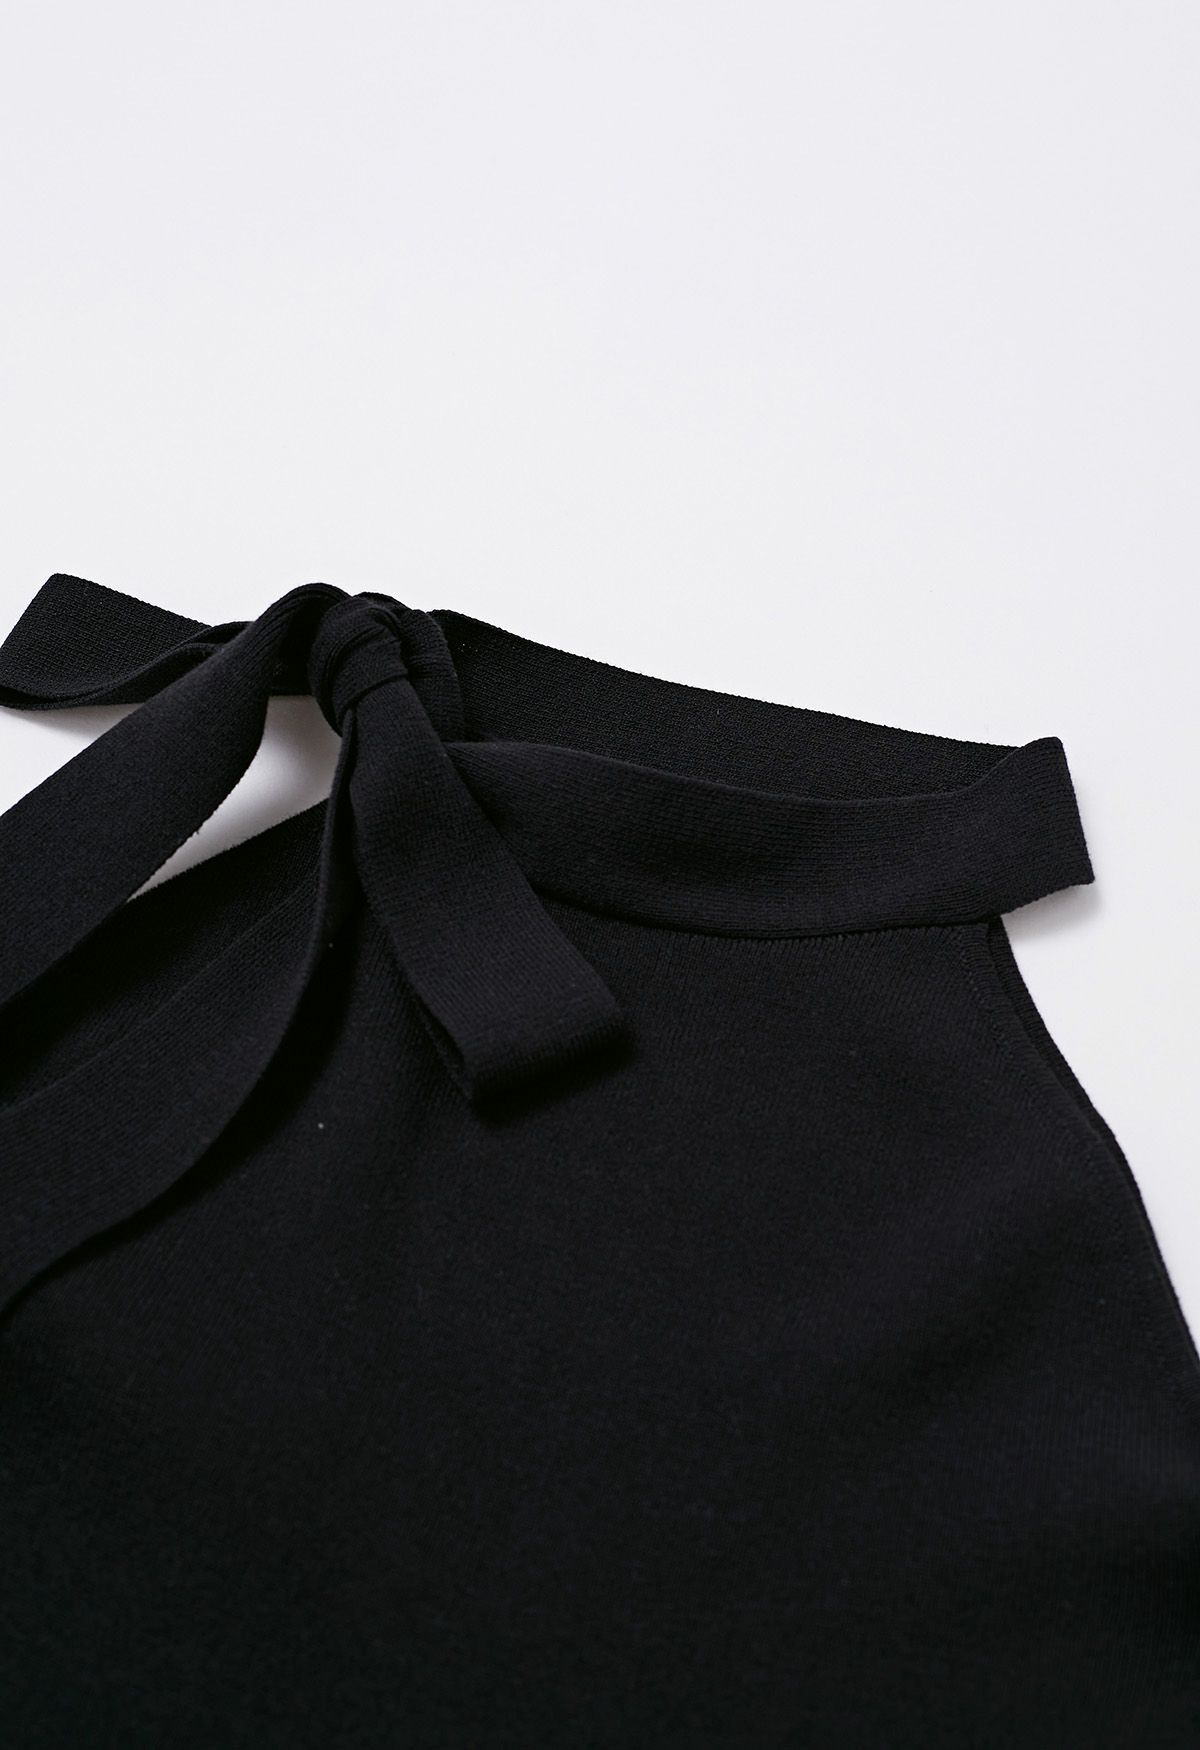 الجانب BOWKNOT العنق Bodycon فستان متماسكة باللون الأسود